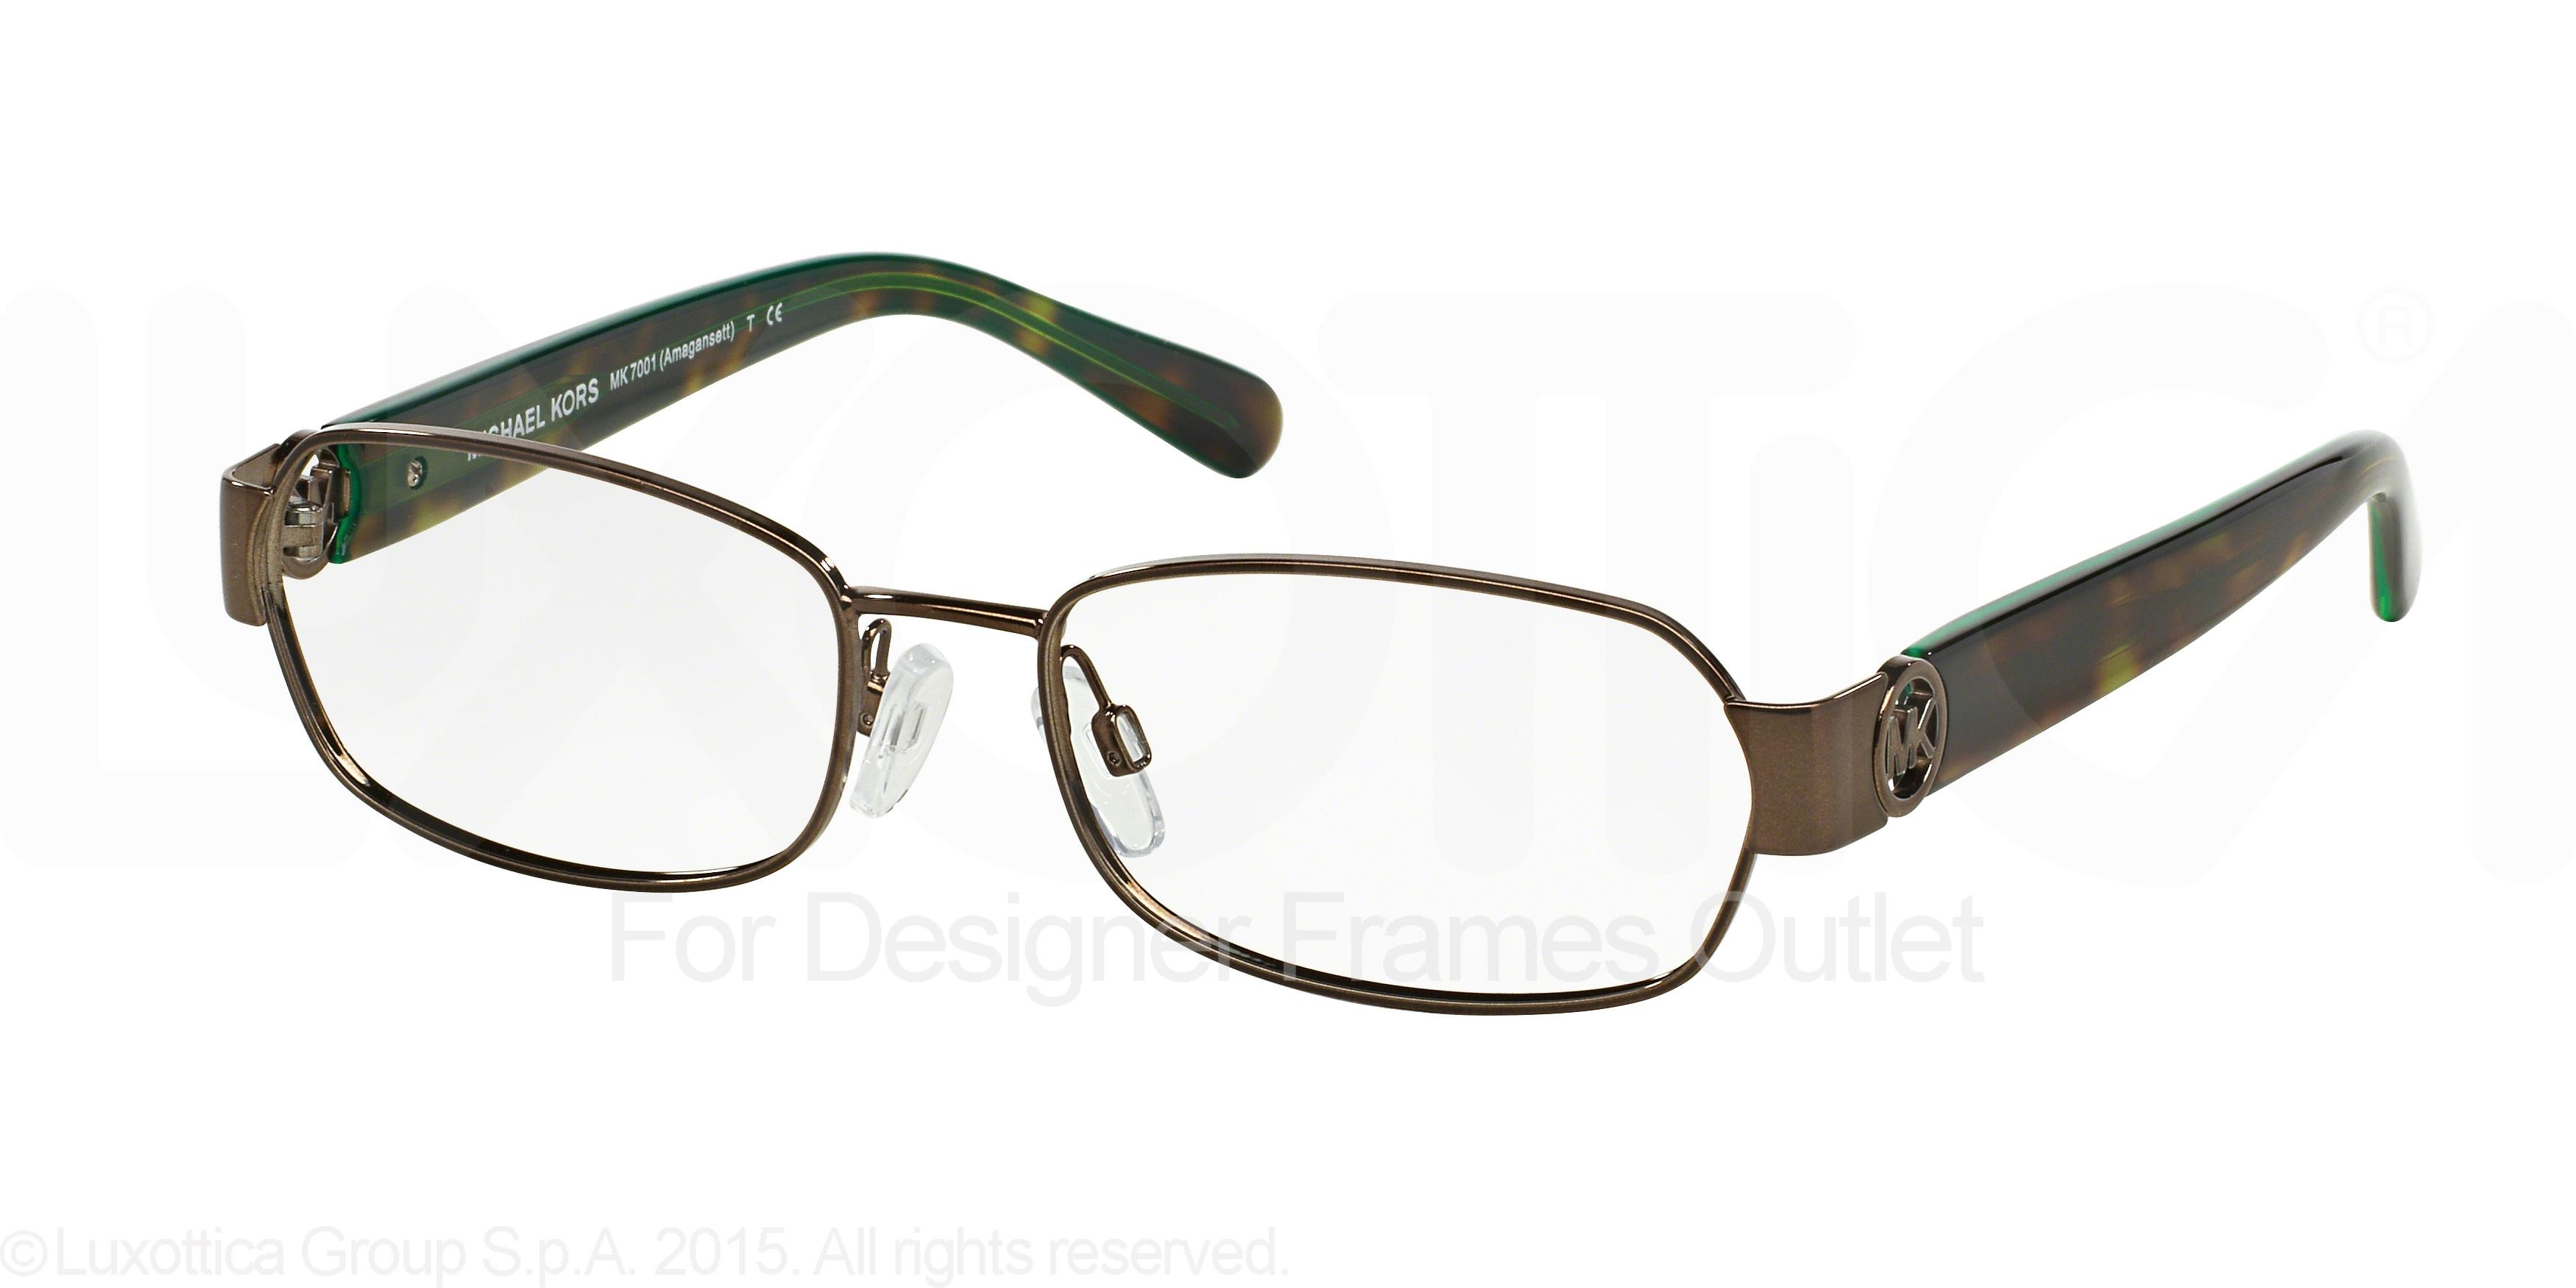 Designer Frames Outlet. Michael Kors Eyeglasses MK7001 Amagansett